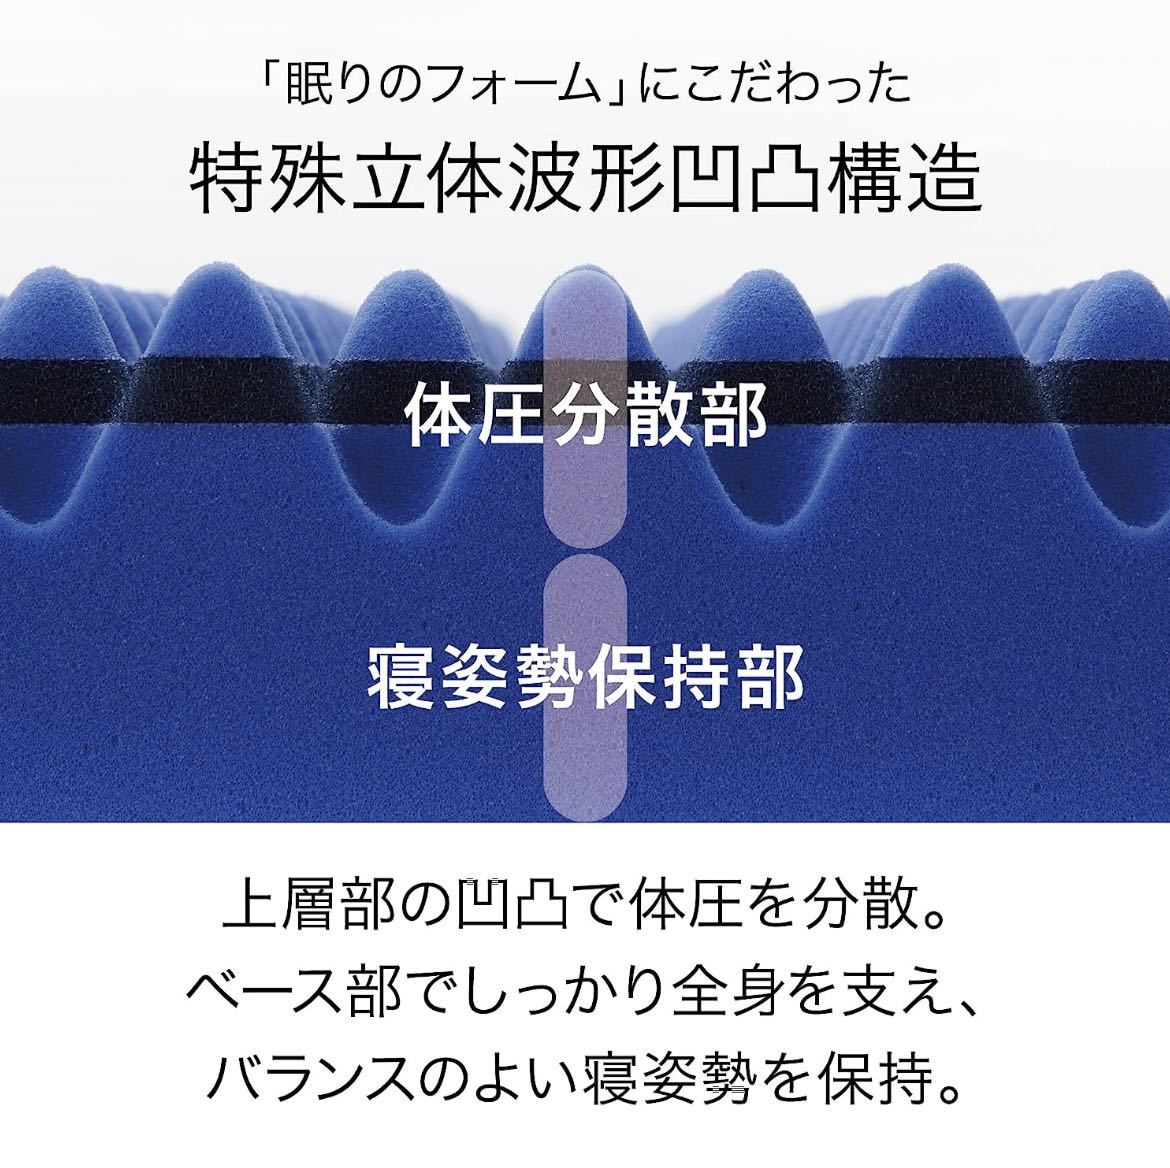 【未開封】西川 (Nishikawa) [エアー 01] マットレス セミダブル 高反発 眠りを深くする 厚さ8cm日本製 AiR ブルー/ハード HC19551632B_画像3